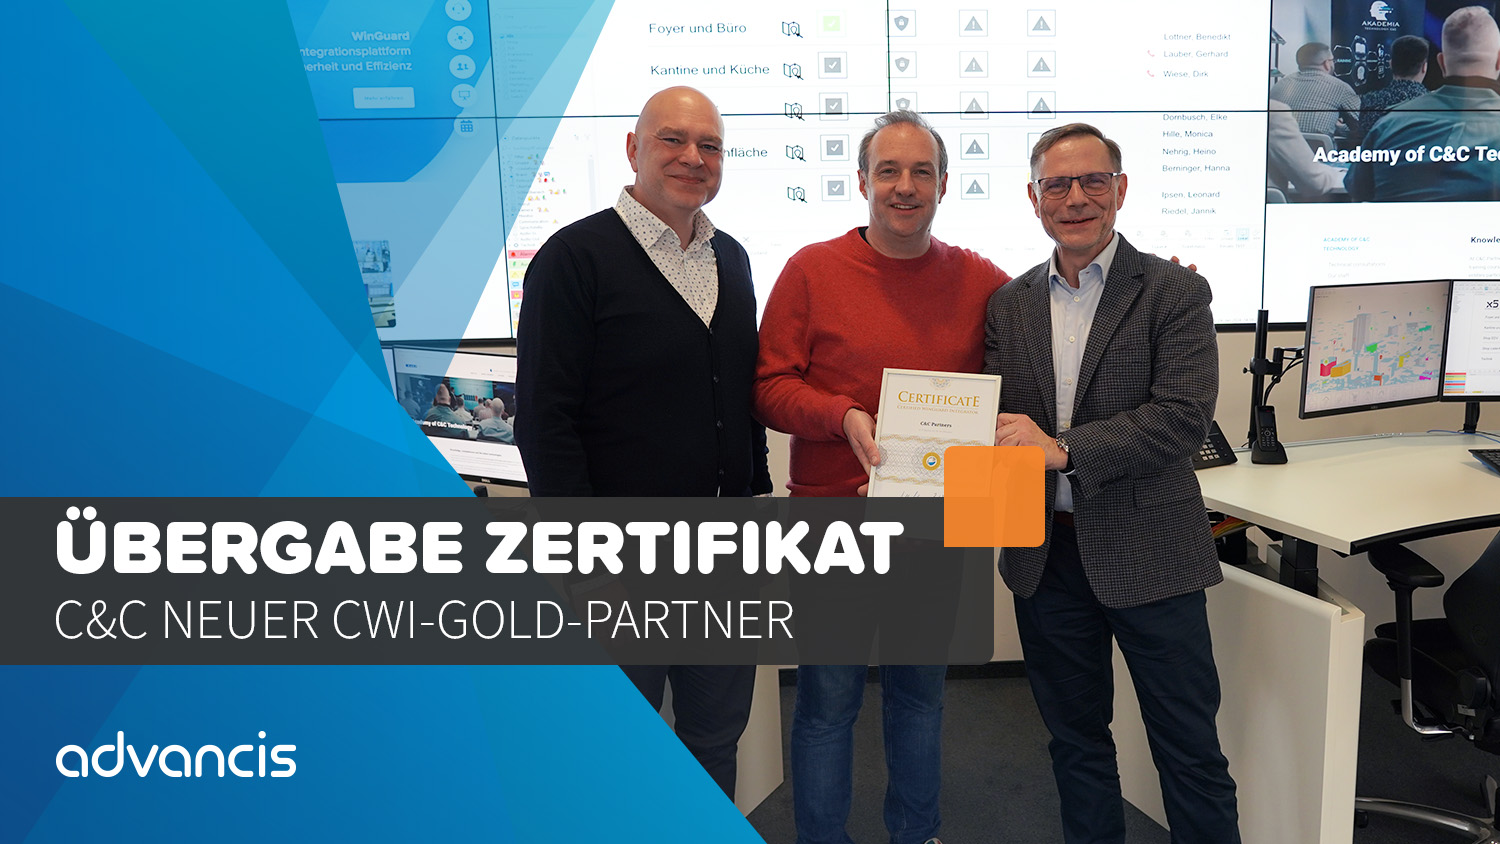  C&C neuer CWI-Gold-Partner